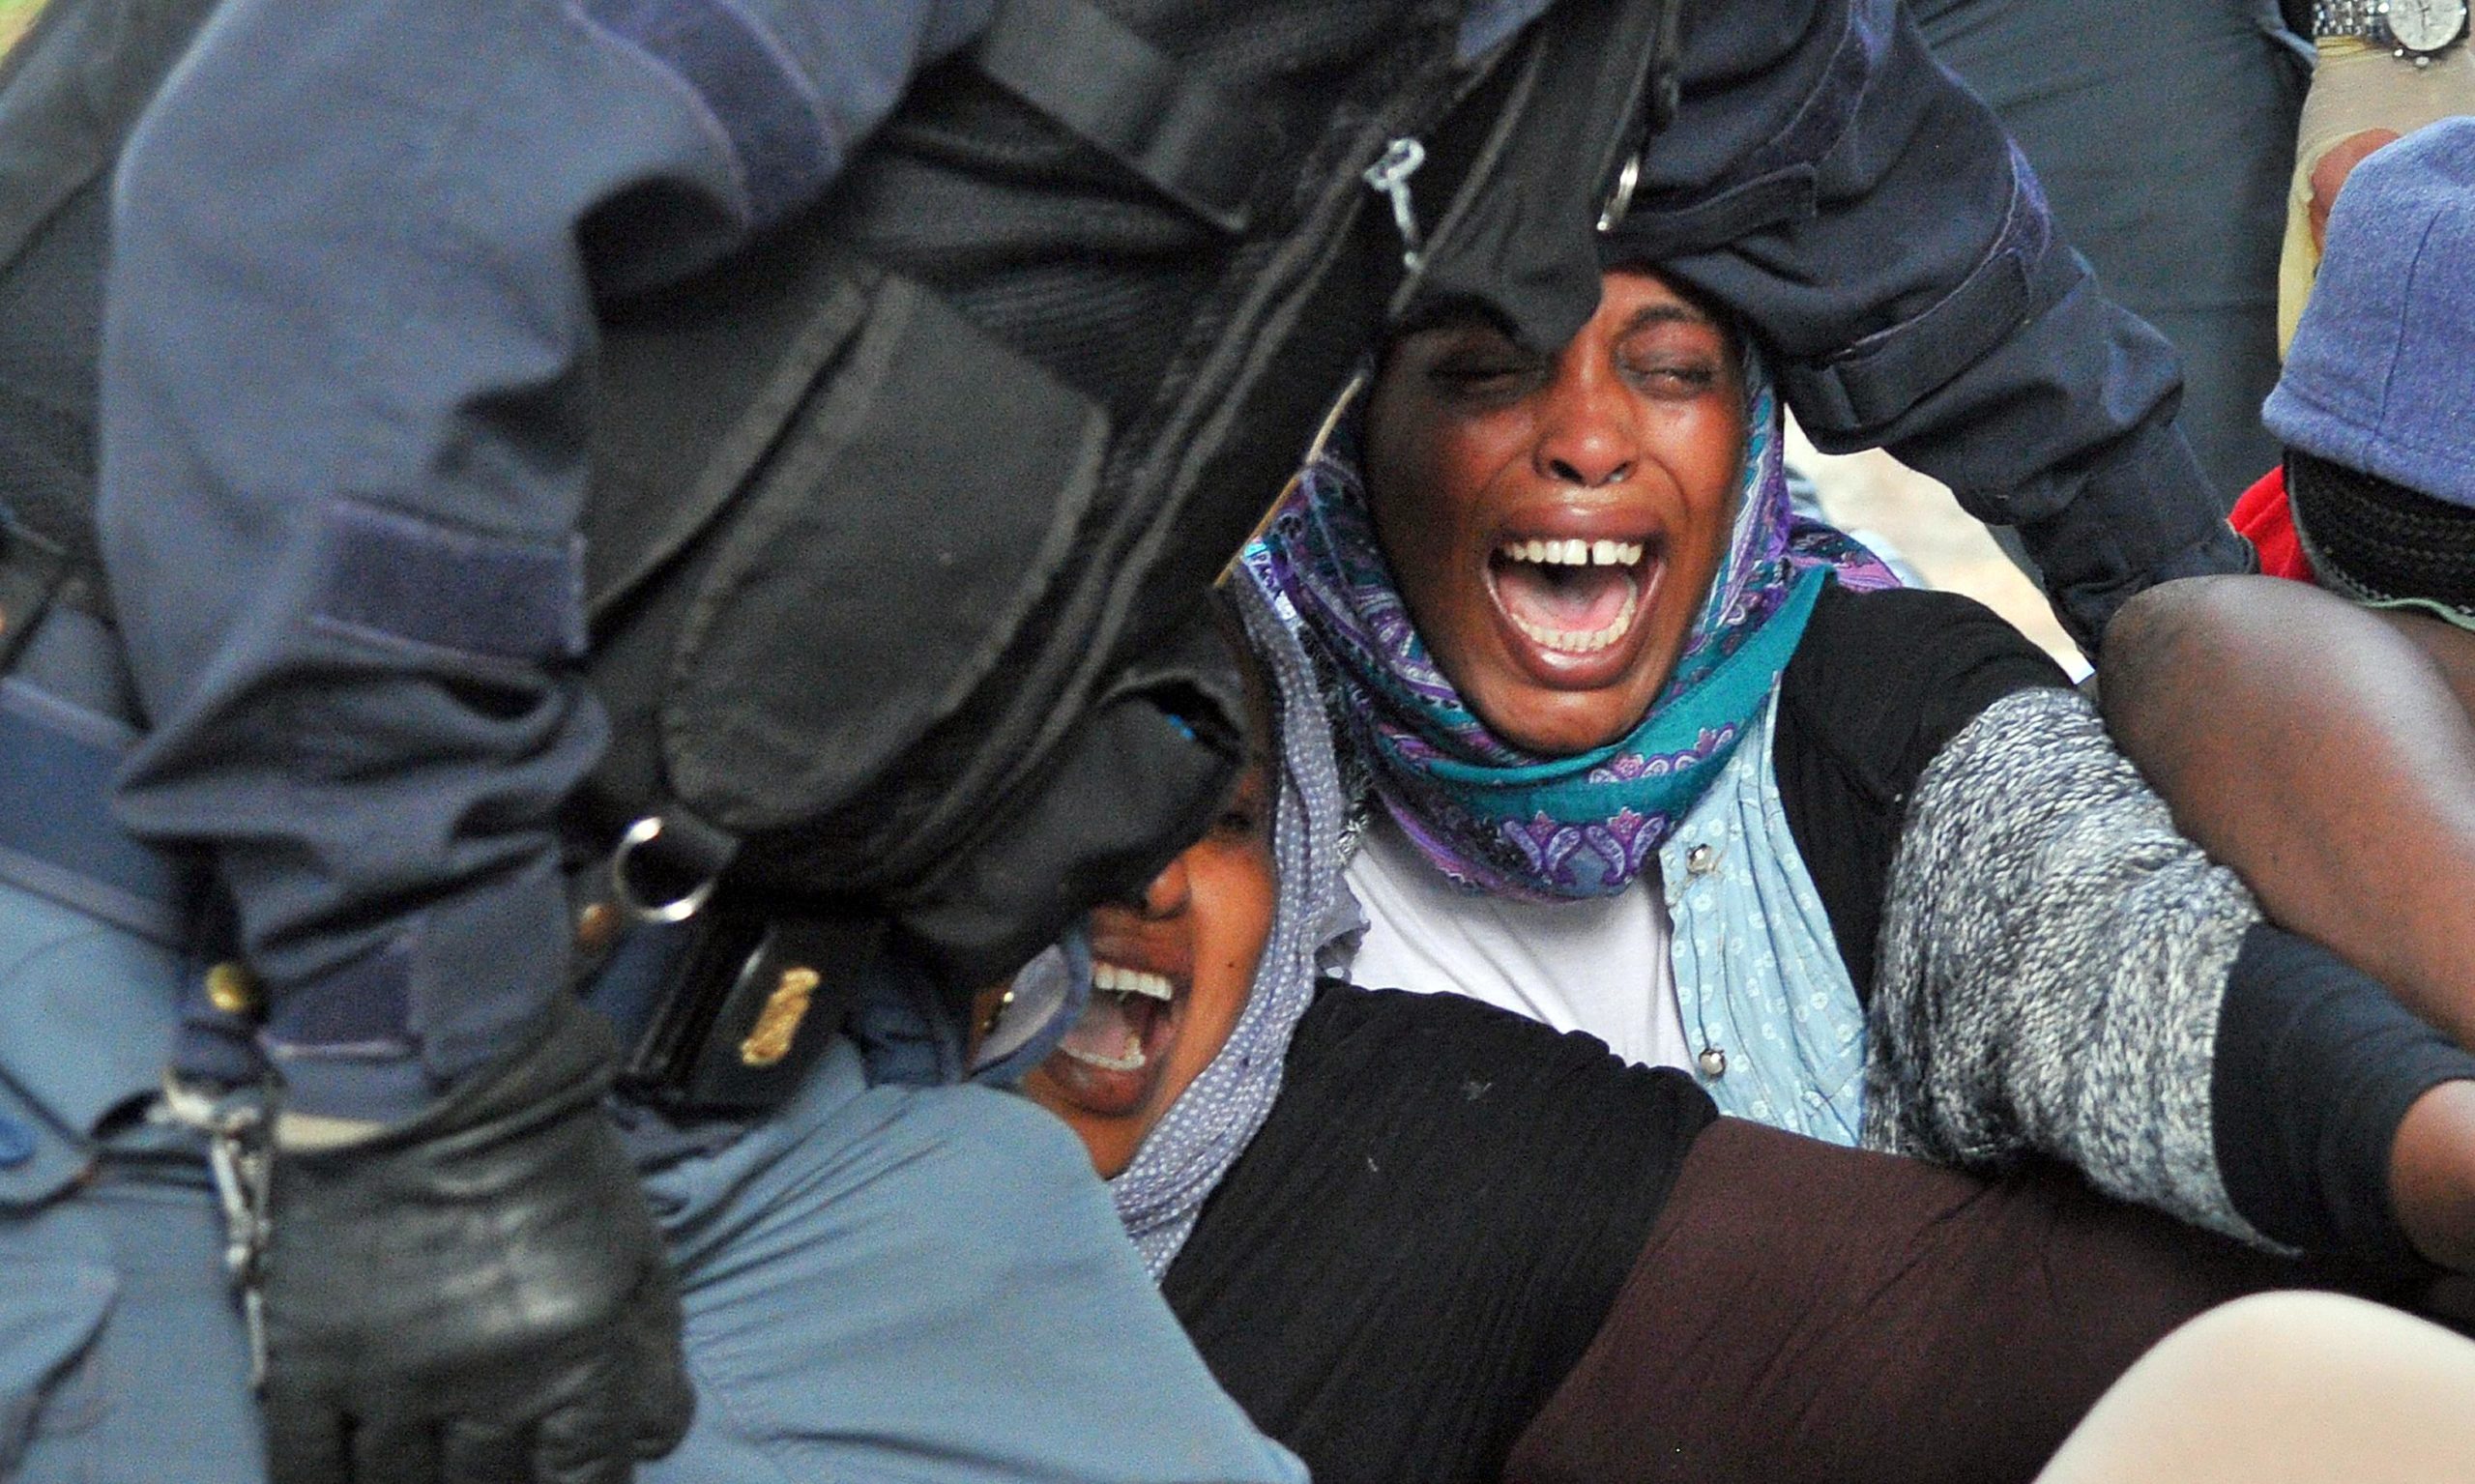 Συγκρούσεις στο Μιλάνο μεταξύ αστυνομικών και μεταναστών